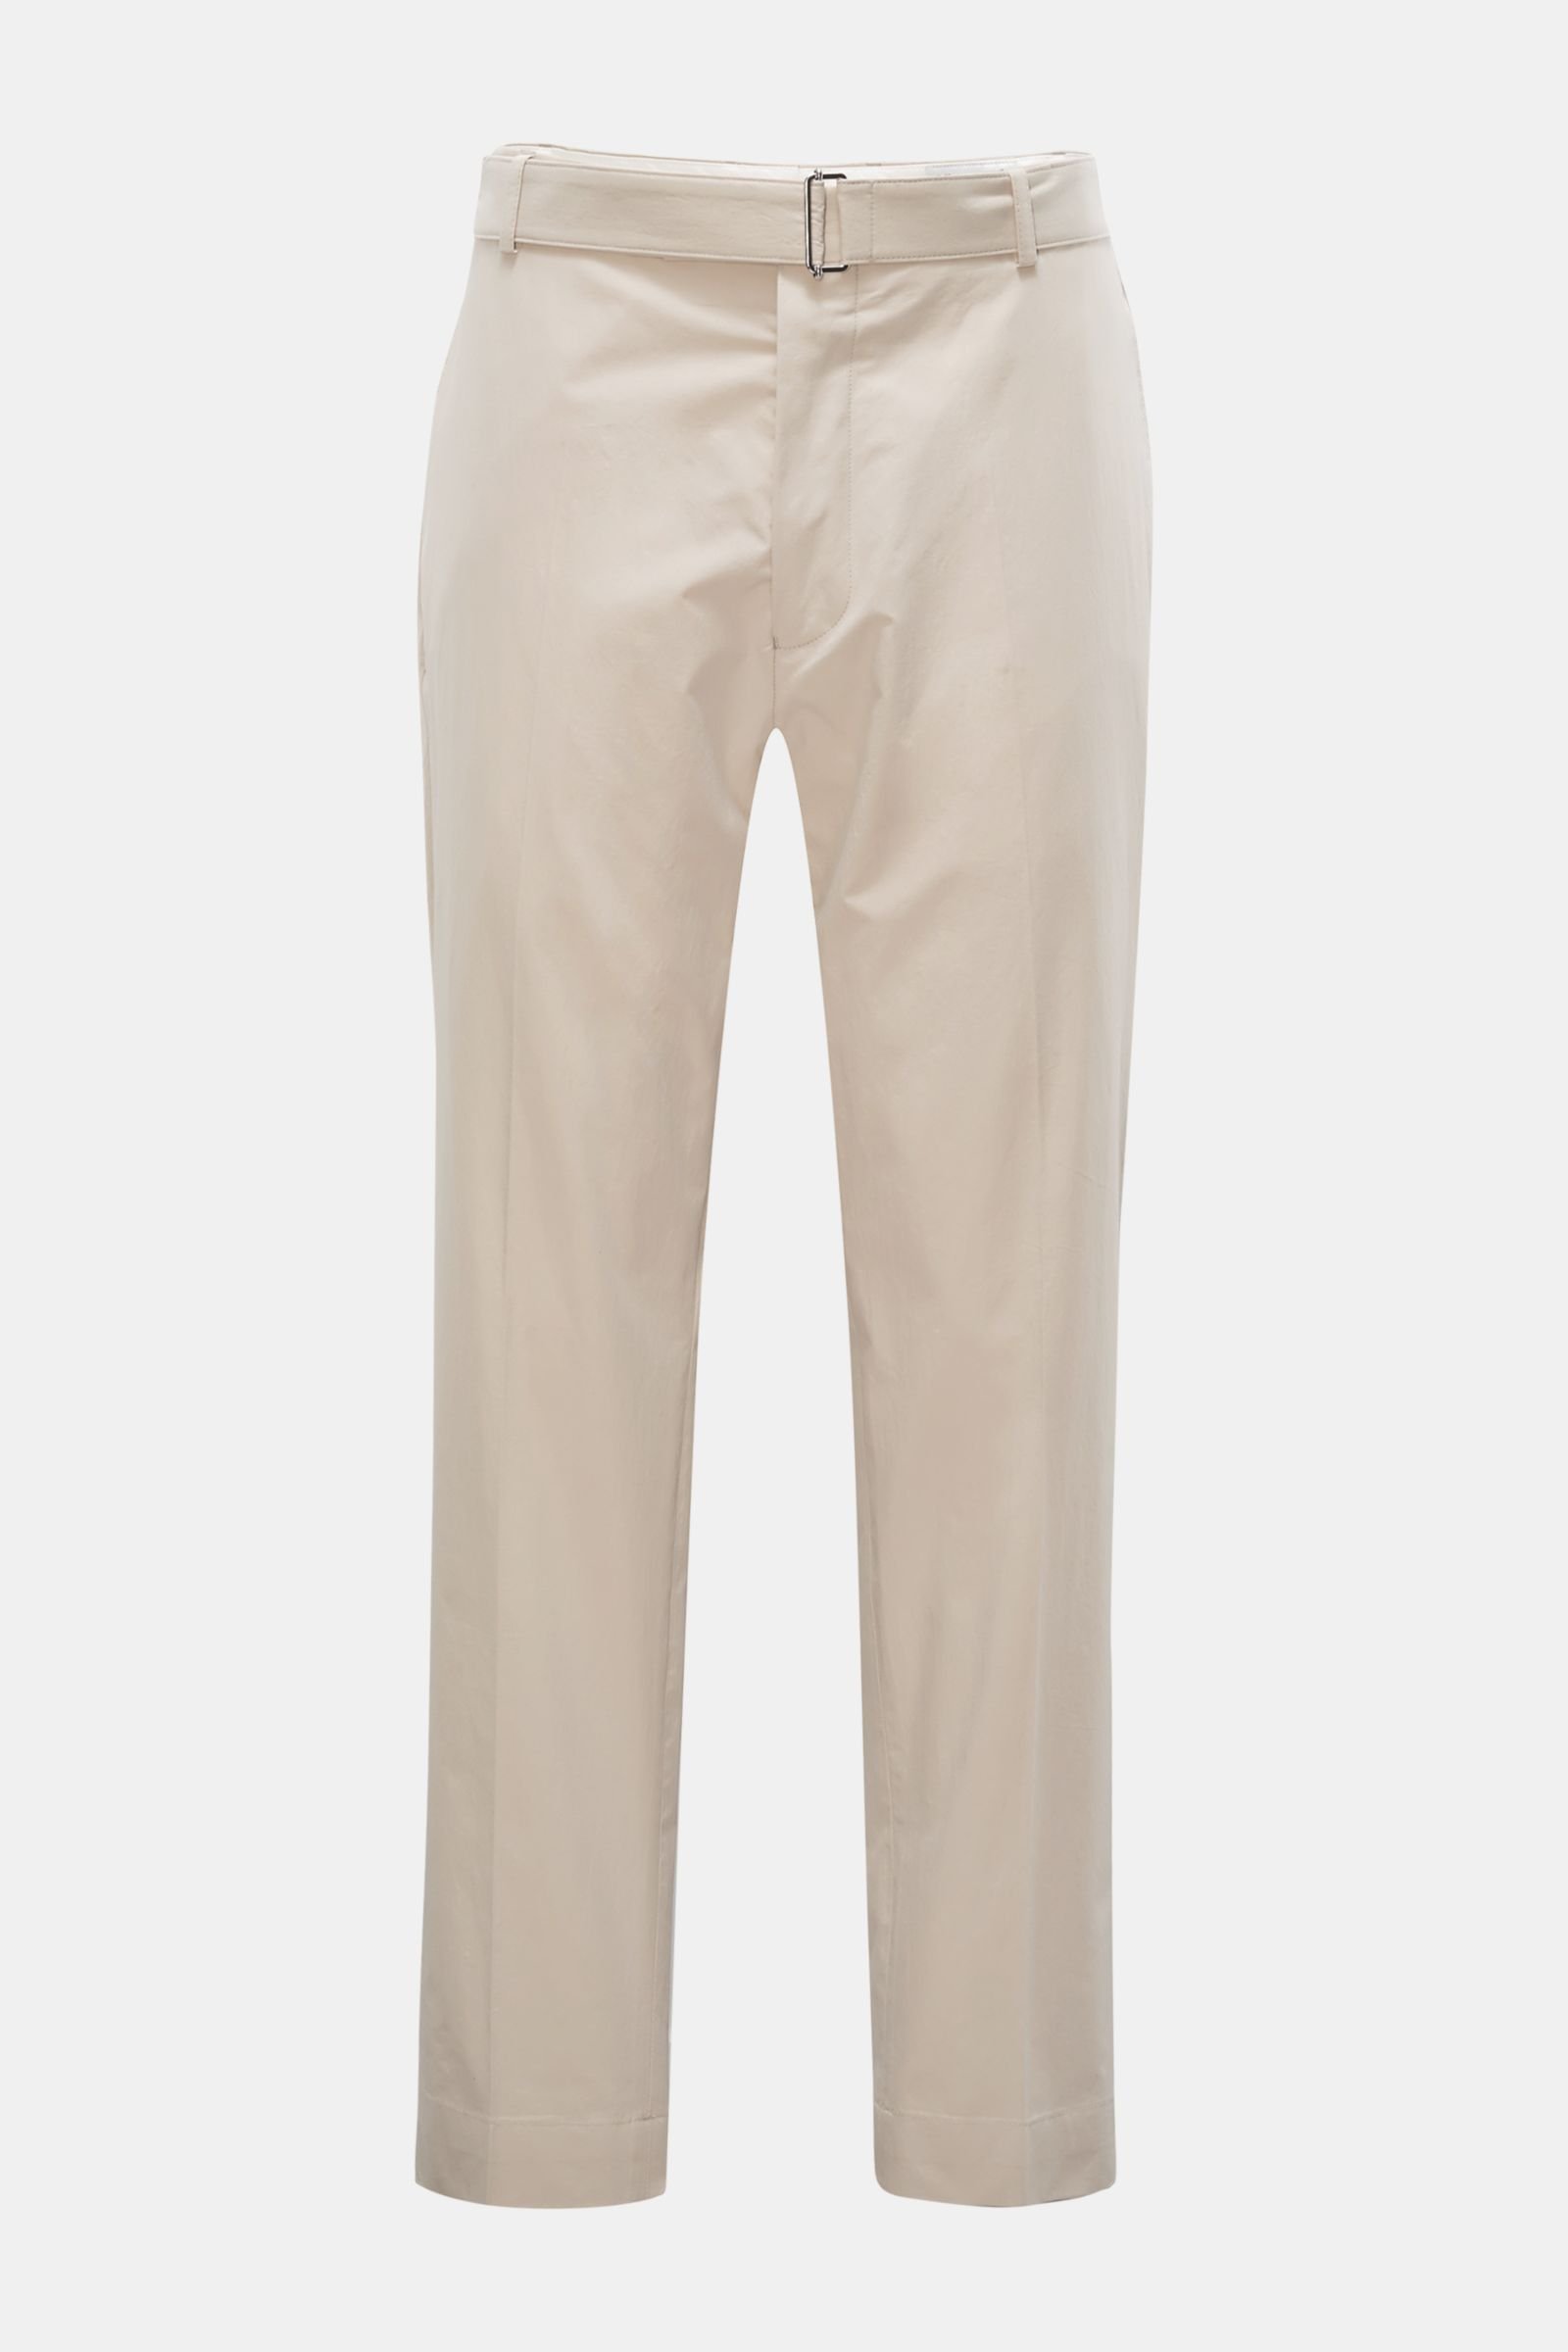 OFFICINE GÉNÉRALE cotton trousers 'Owen' beige | BRAUN Hamburg